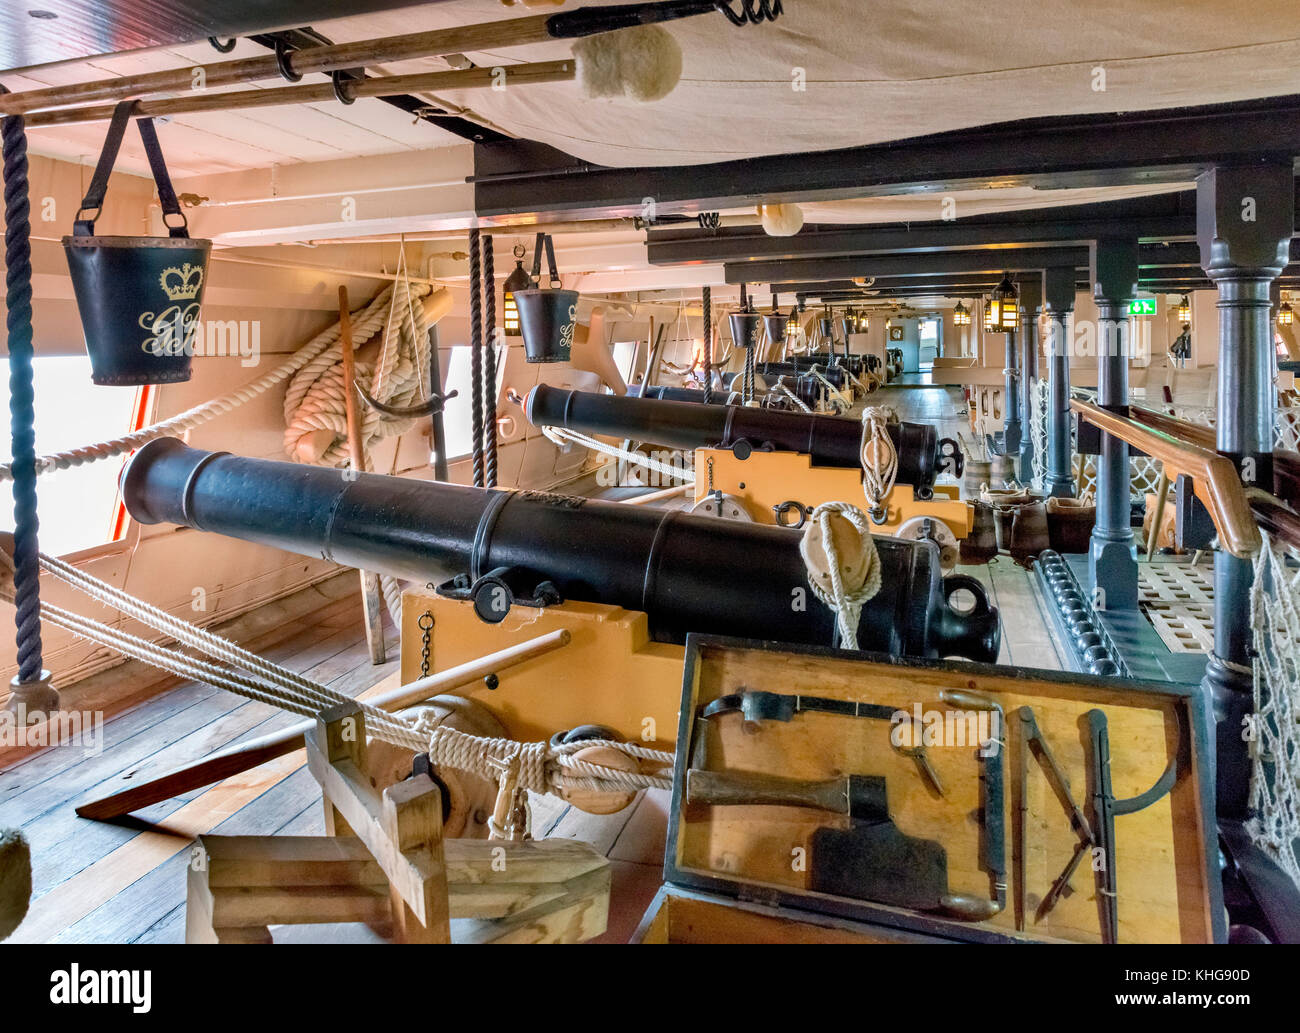 HMS Victory. Kanone auf das gundeck des Sieges, Nelson's Flaggschiff in der Schlacht von Trafalgar, Portsmouth Historic Dockyard, Hampshire, England, Großbritannien Stockfoto